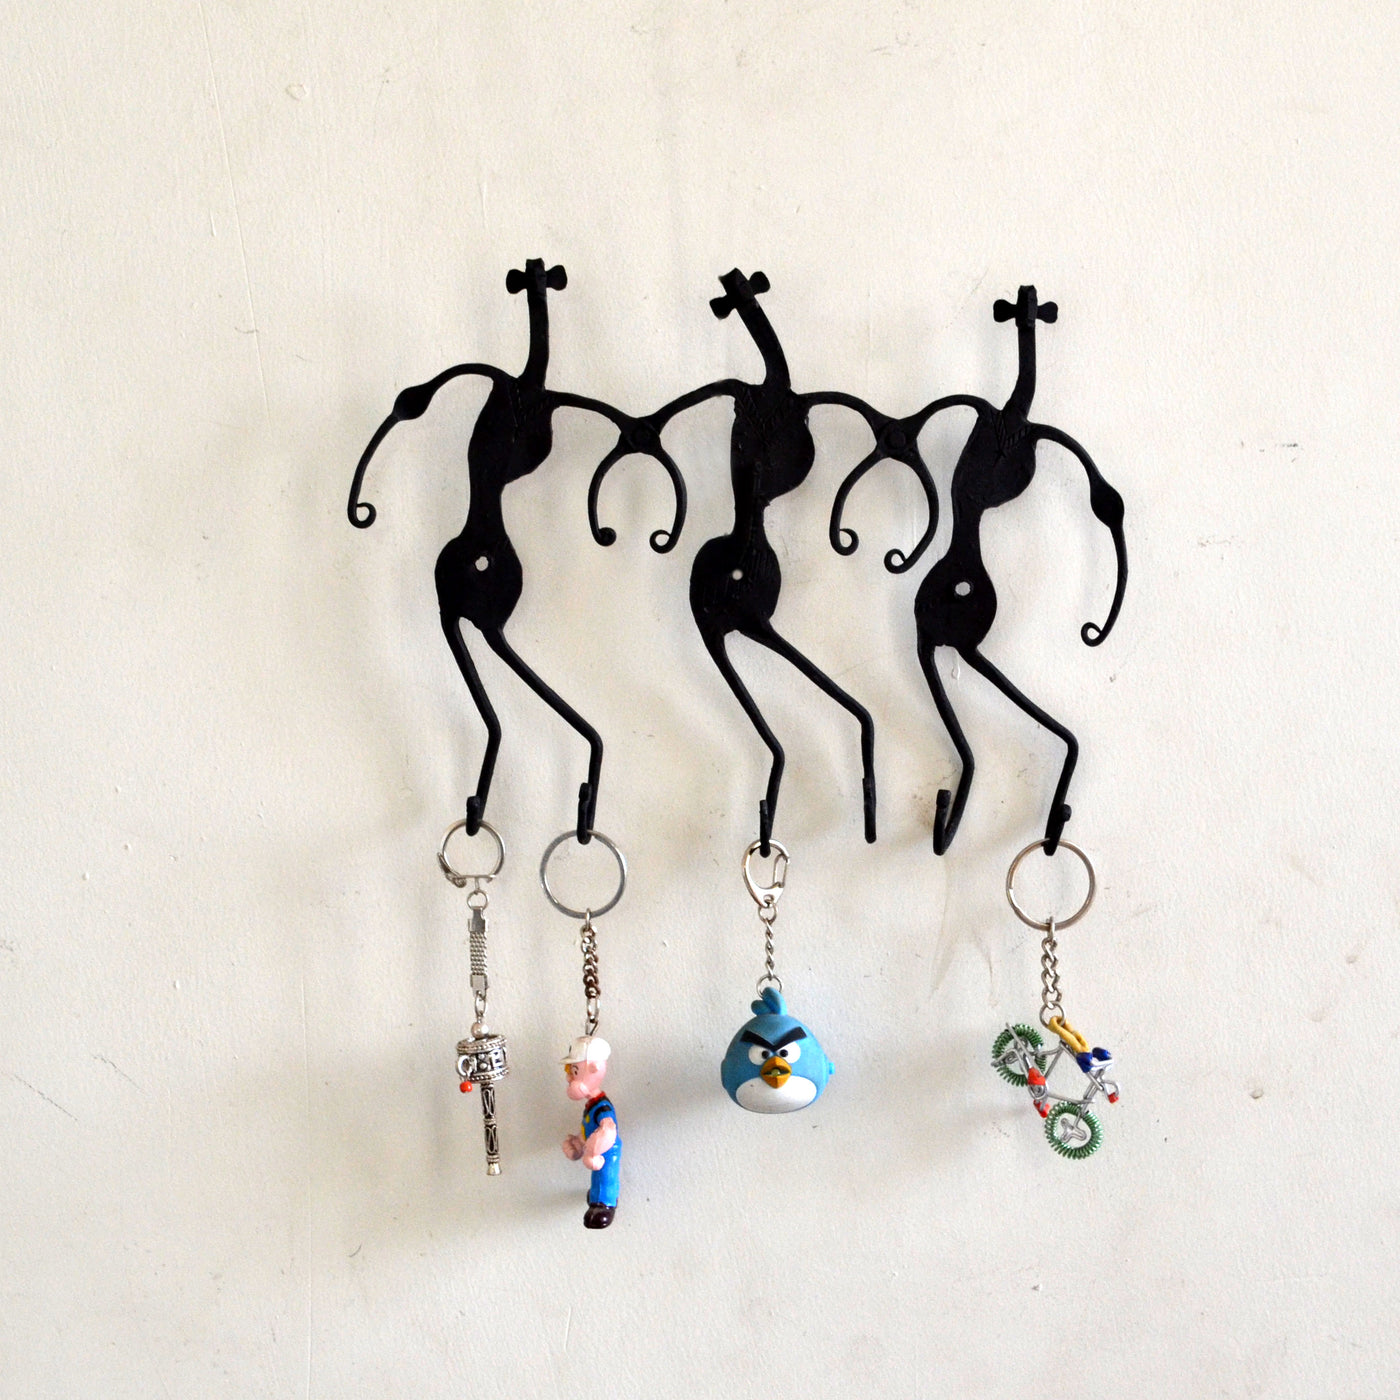 Chinhhari arts Wrought Iron Tribal Dance 6 Hook Keychain Holder - Chinhhari Arts store